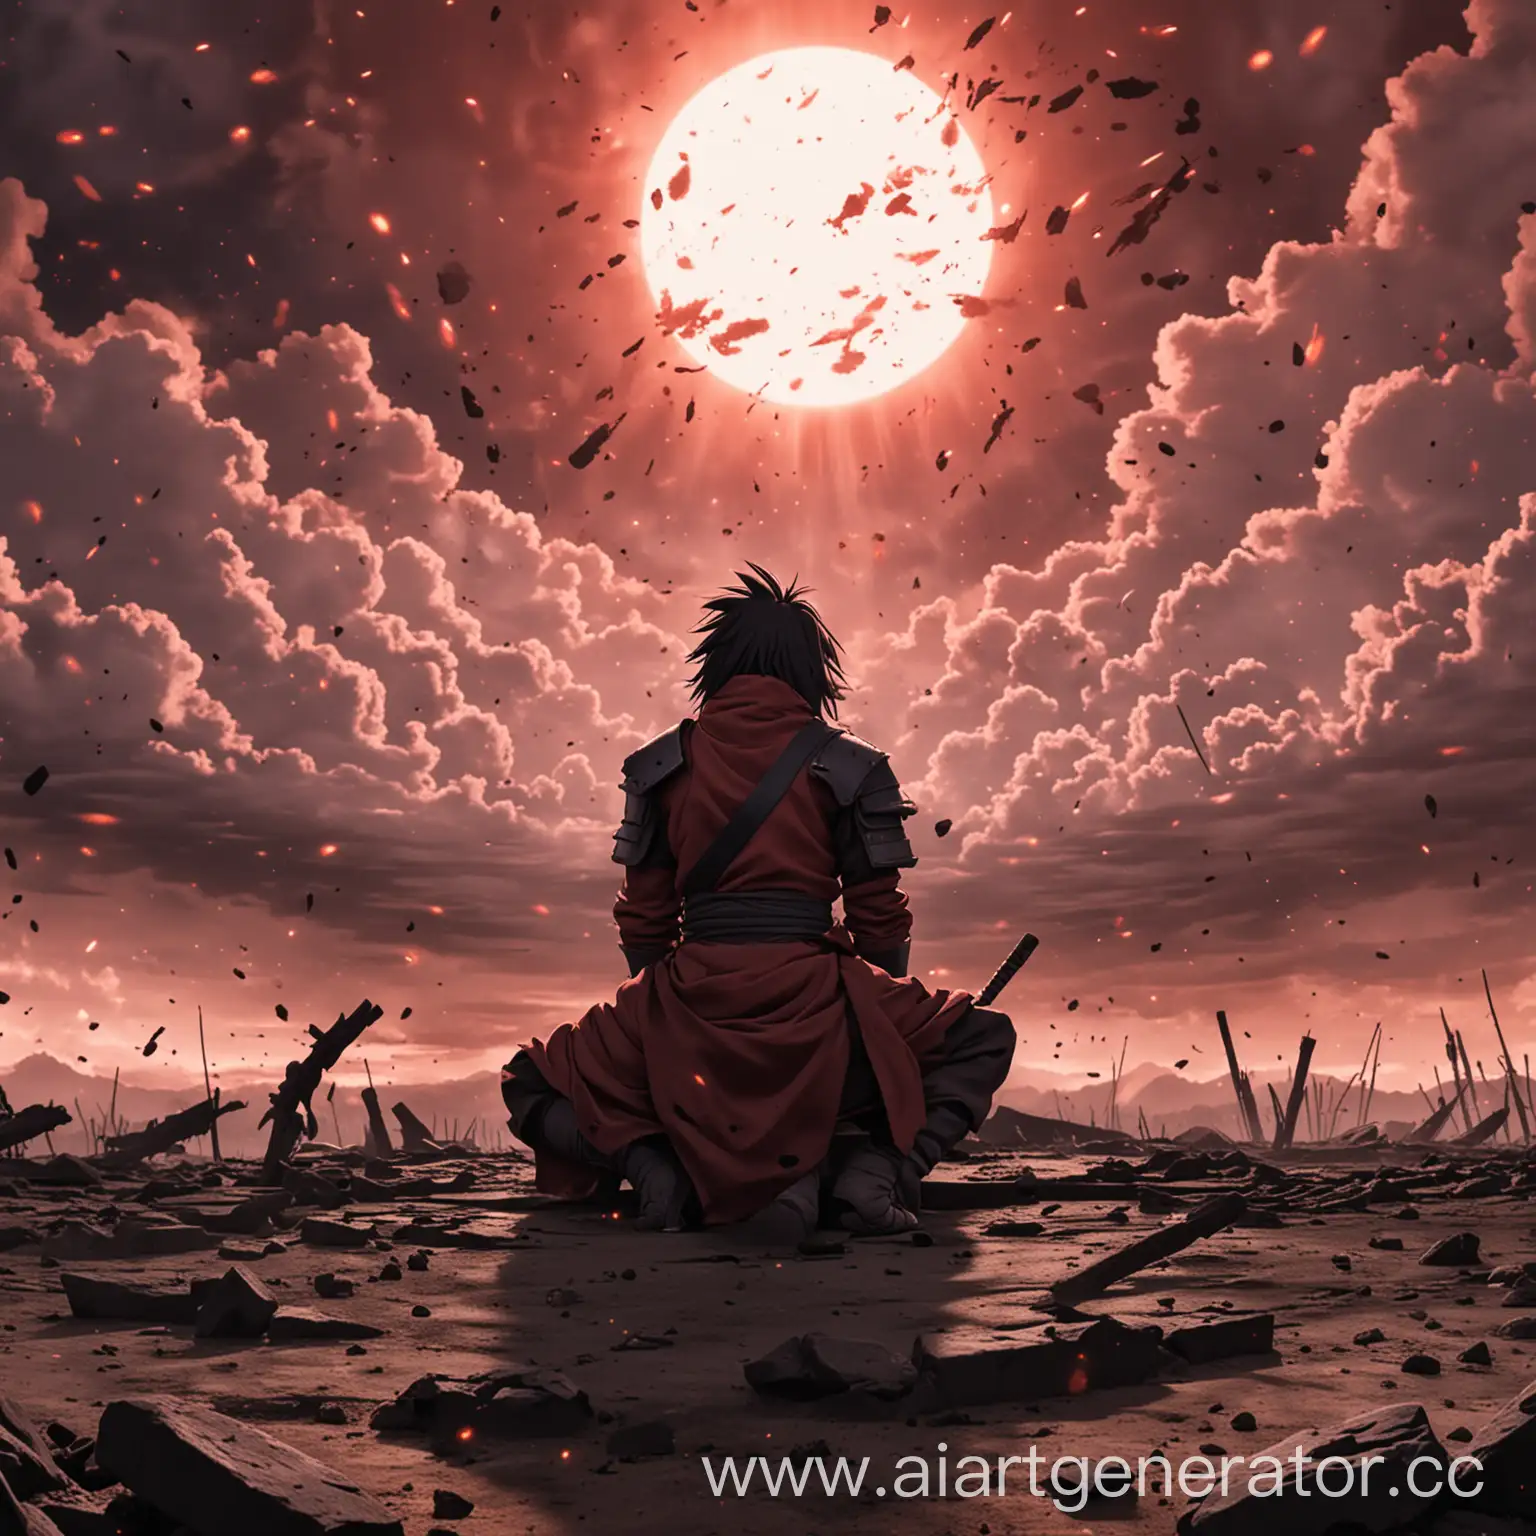 мадара учиха сидит на поле битвы , и наблюдает  за небом полным пепла
